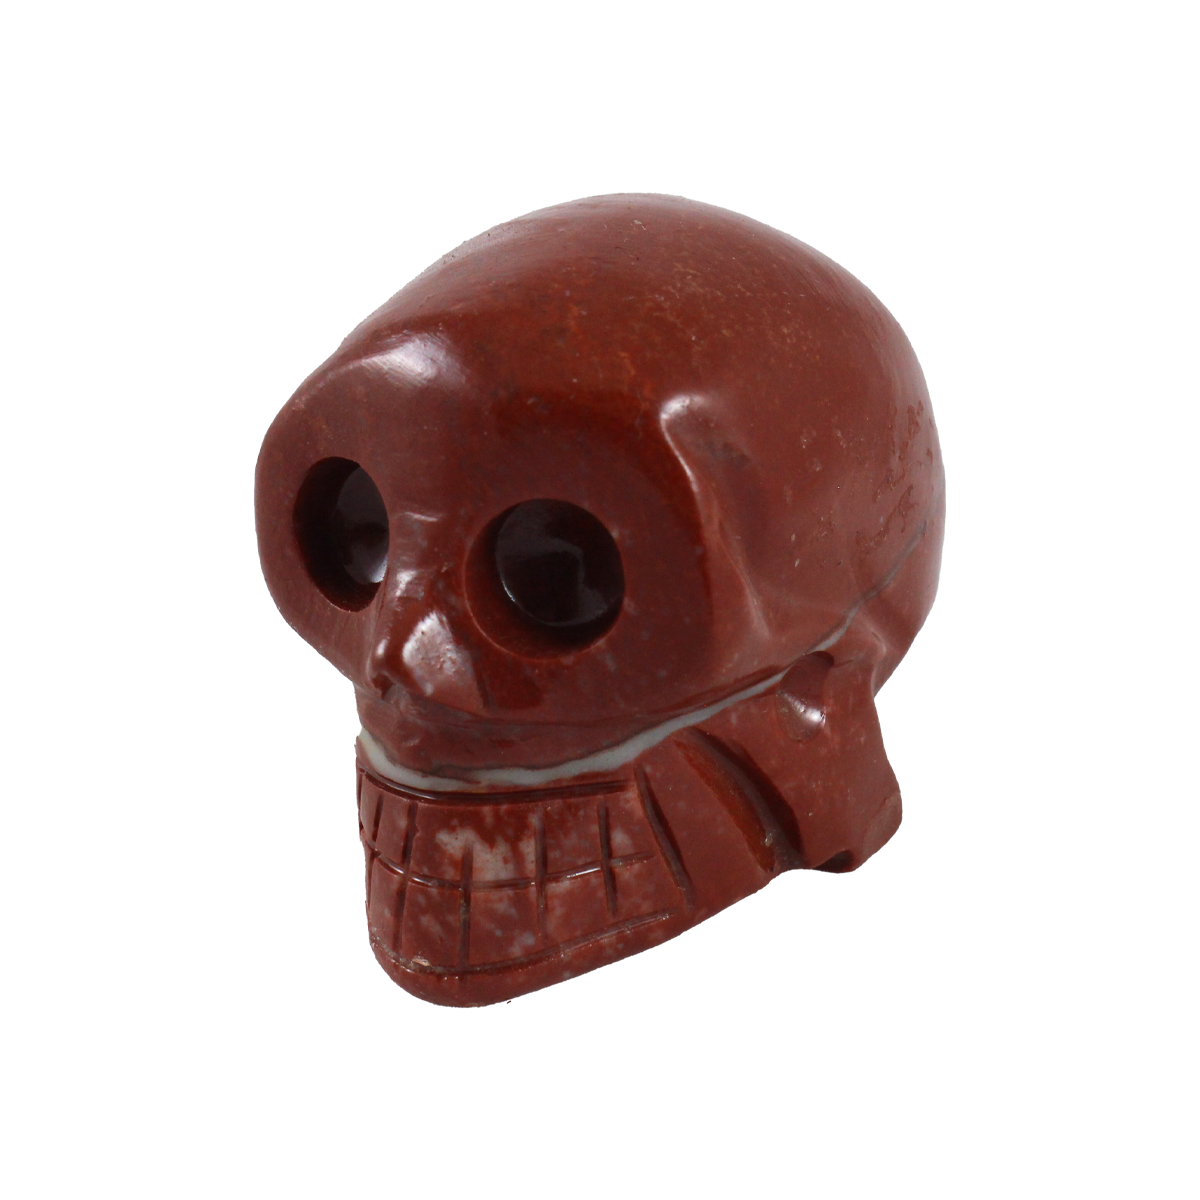 Mahogany soapstone skull